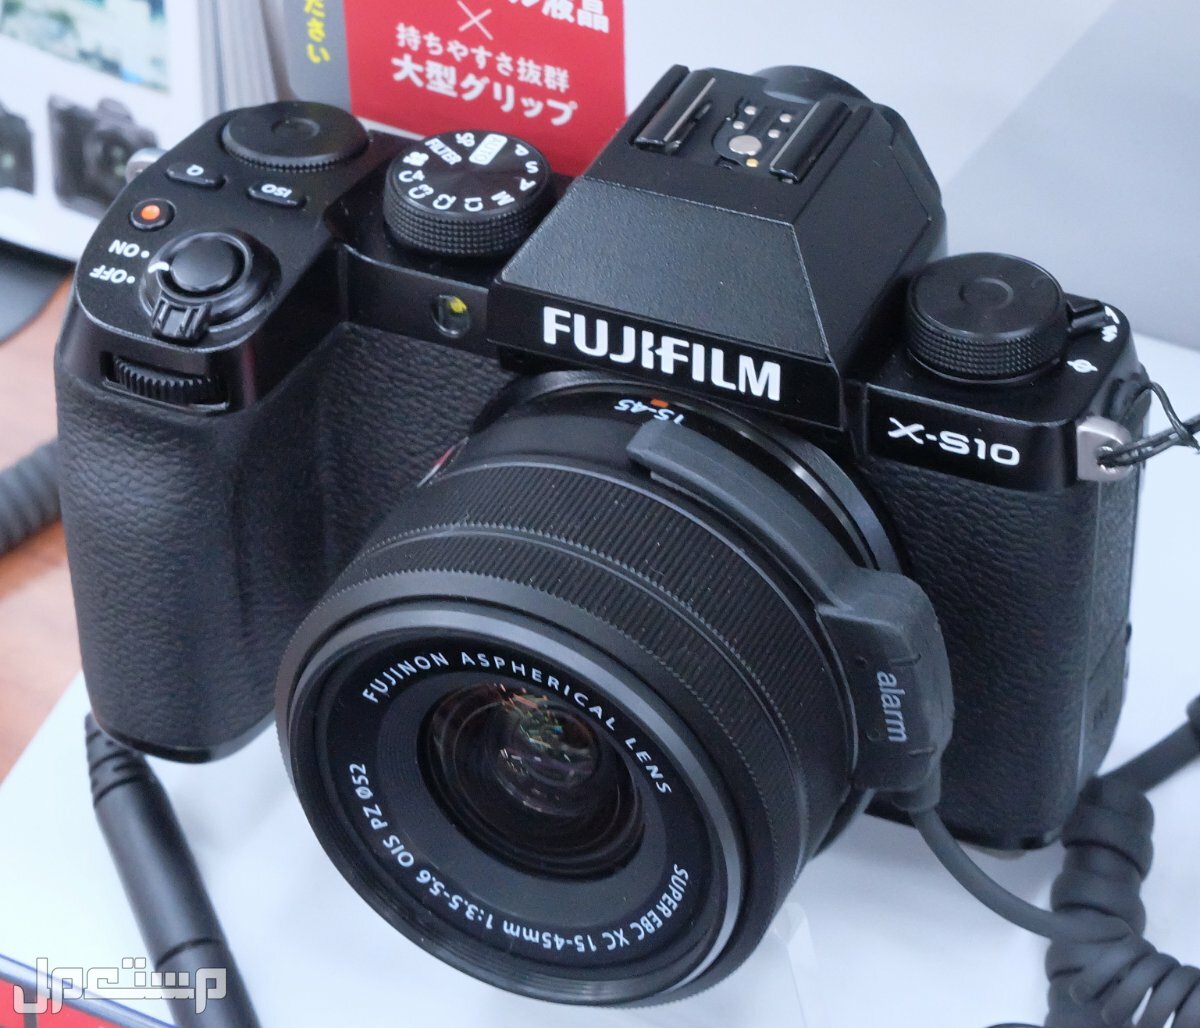 مواصفات ومميزات وعيوب كاميرات التصوير فوجي فيلم في سوريا مواصفات كاميرا Fujifilm X-S10